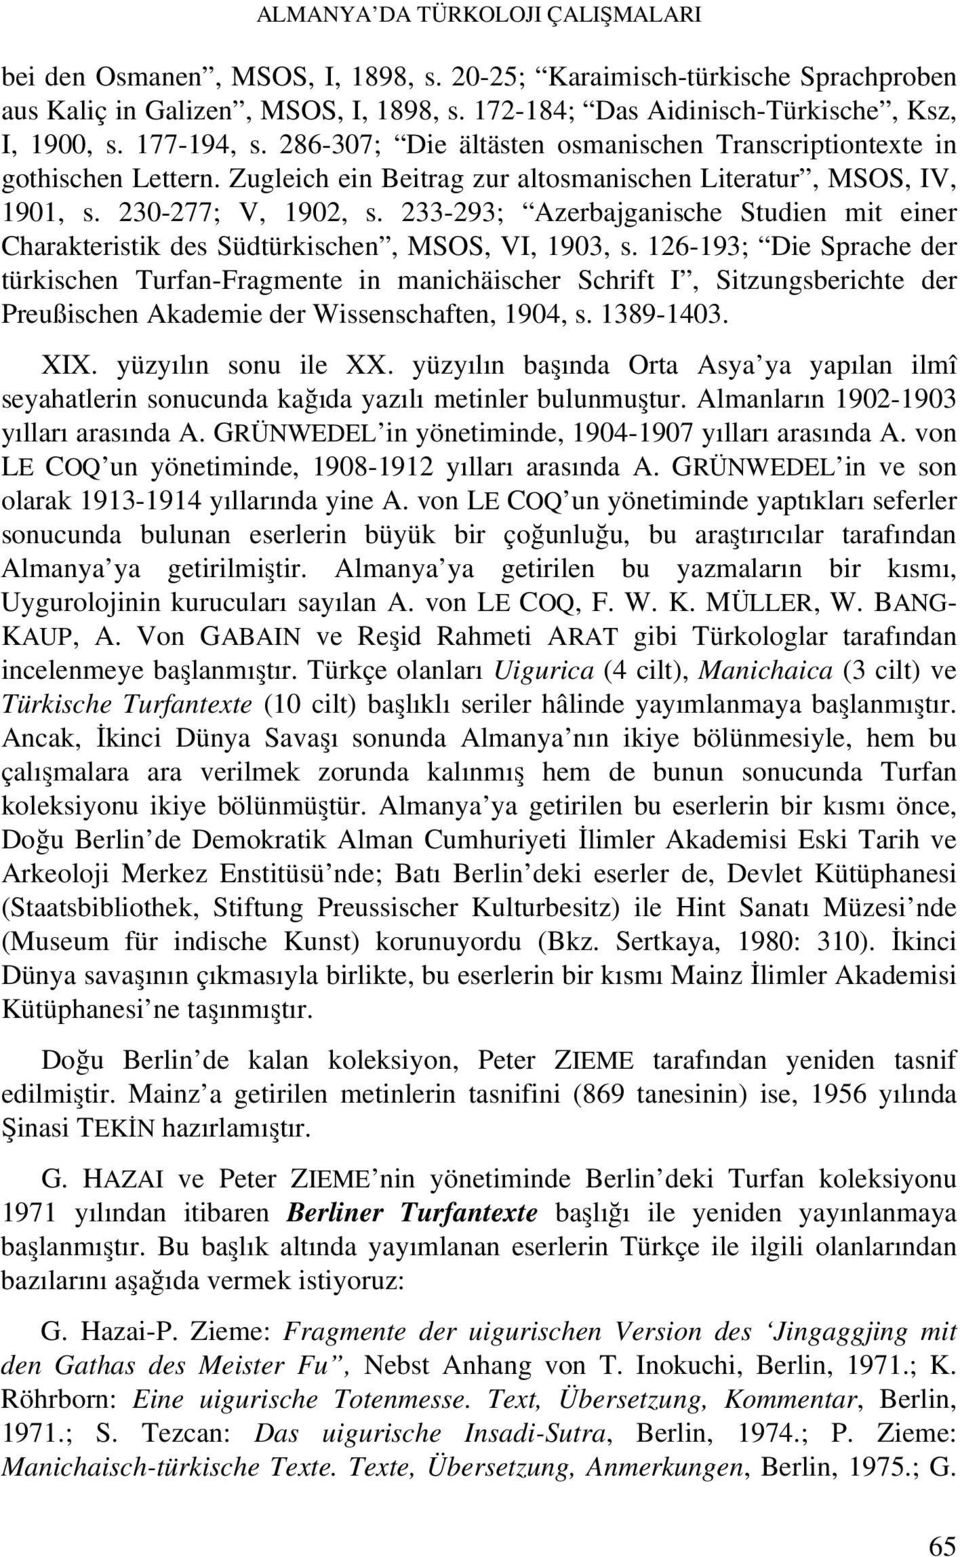 233-293; Azerbajganische Studien mit einer Charakteristik des Südtürkischen, MSOS, VI, 1903, s.